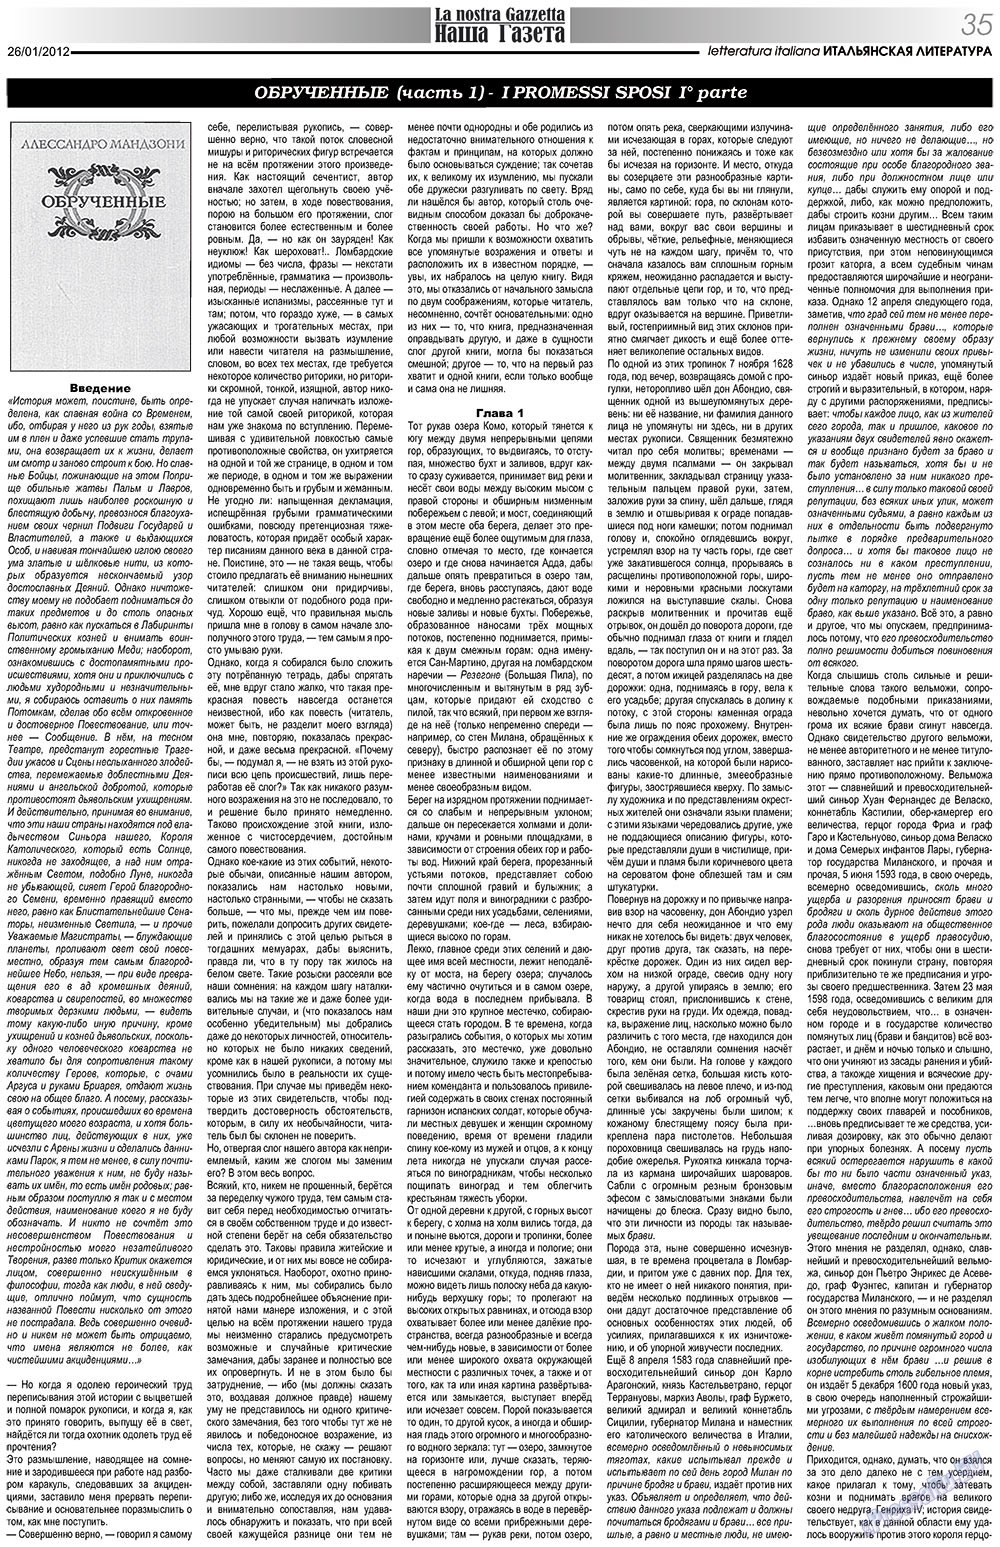 Nascha Gazeta (Zeitung). 2012 Jahr, Ausgabe 149, Seite 35